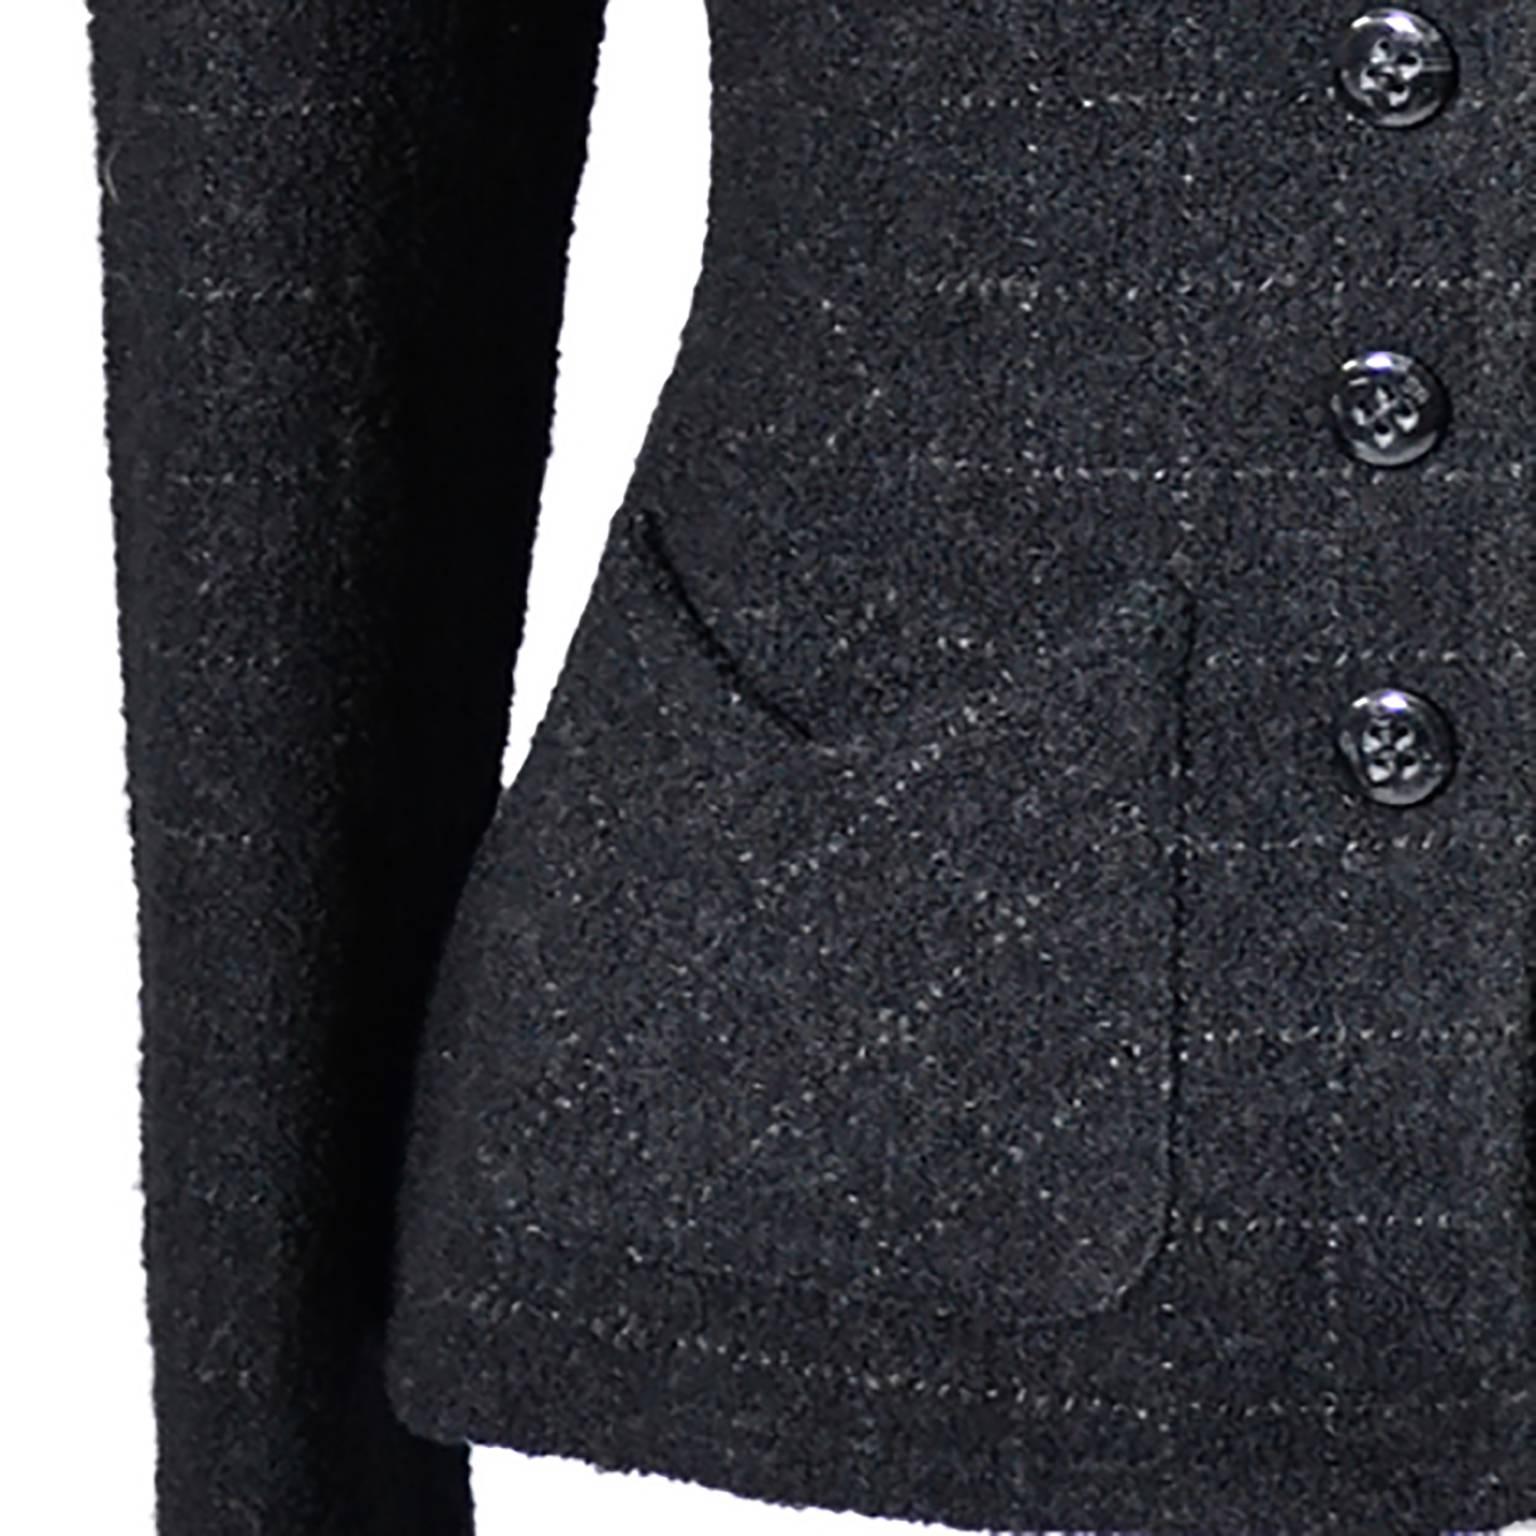 Ce magnifique blazer vintage Sonia Rykiel à carreaux noirs en laine, coton et polyamide mélangés date des années 80. La veste est entièrement doublée et possède de belles poches avant détaillées. Ce blazer joliment ajusté se boutonne sur le devant